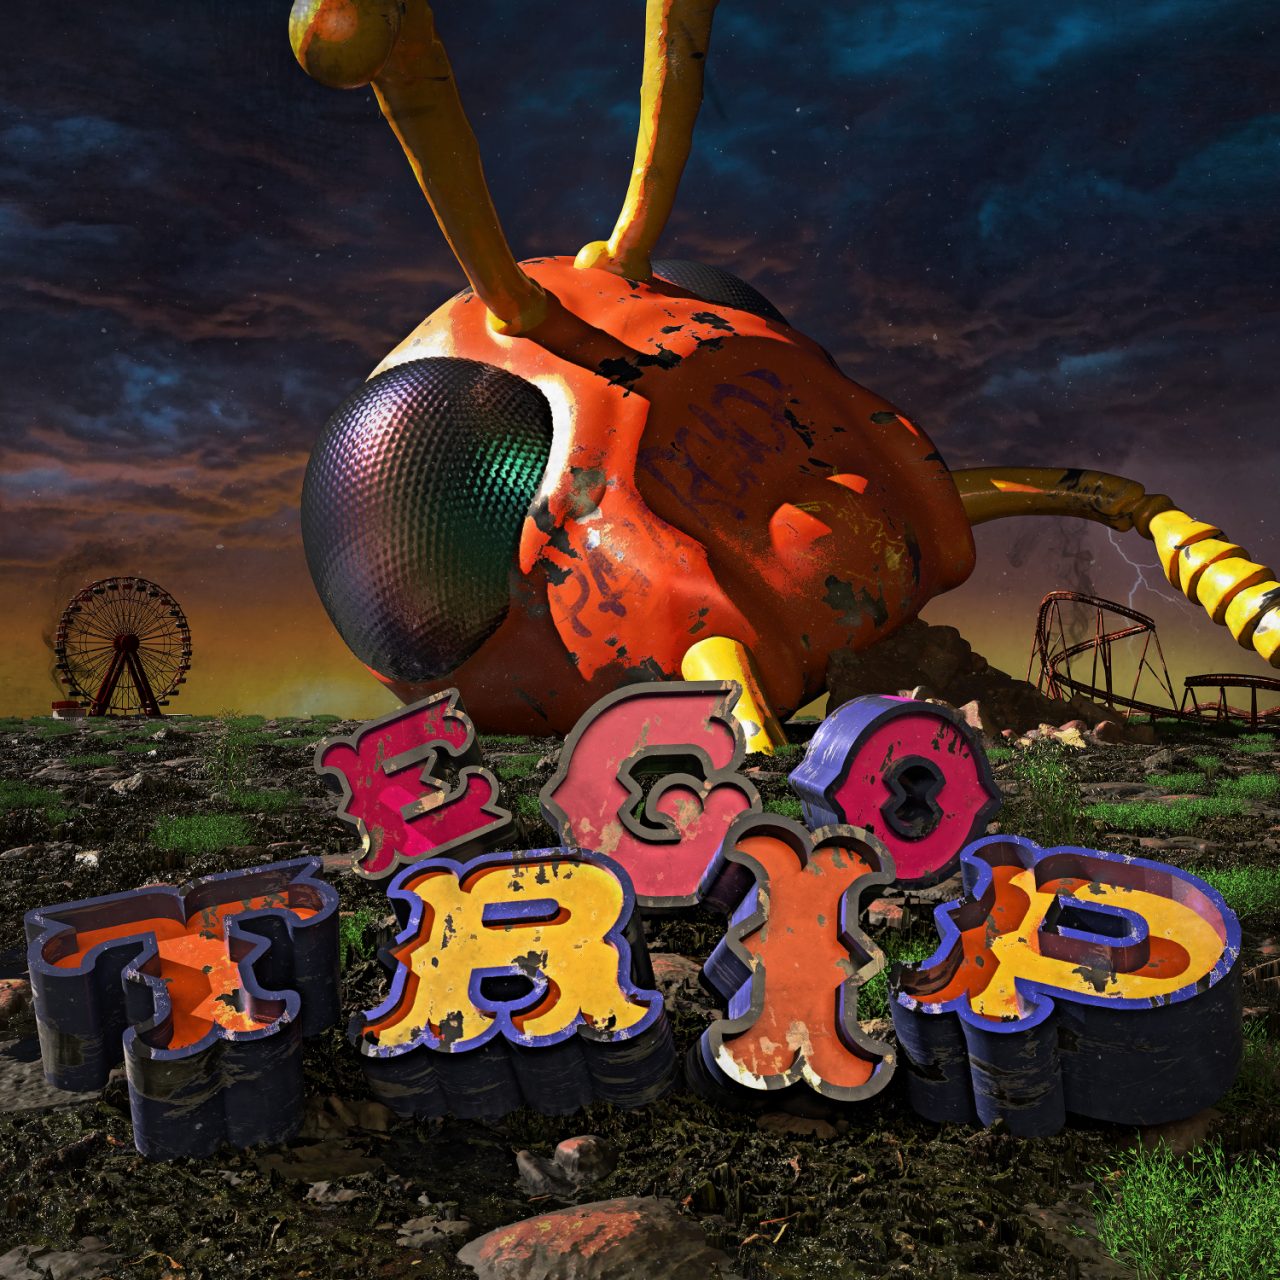 Das Albumcover "Ego Trip" von Papa Roach zeigt im Vordergrund bunte, große Buchstaben (Ego Trip). Dahinter sind ein großes Ufo, ein Riesenrad und eine Achterbahn zu sehen. Der Himmel erstrahlt in vielen Farben und Sterne leuchten am Firmament.